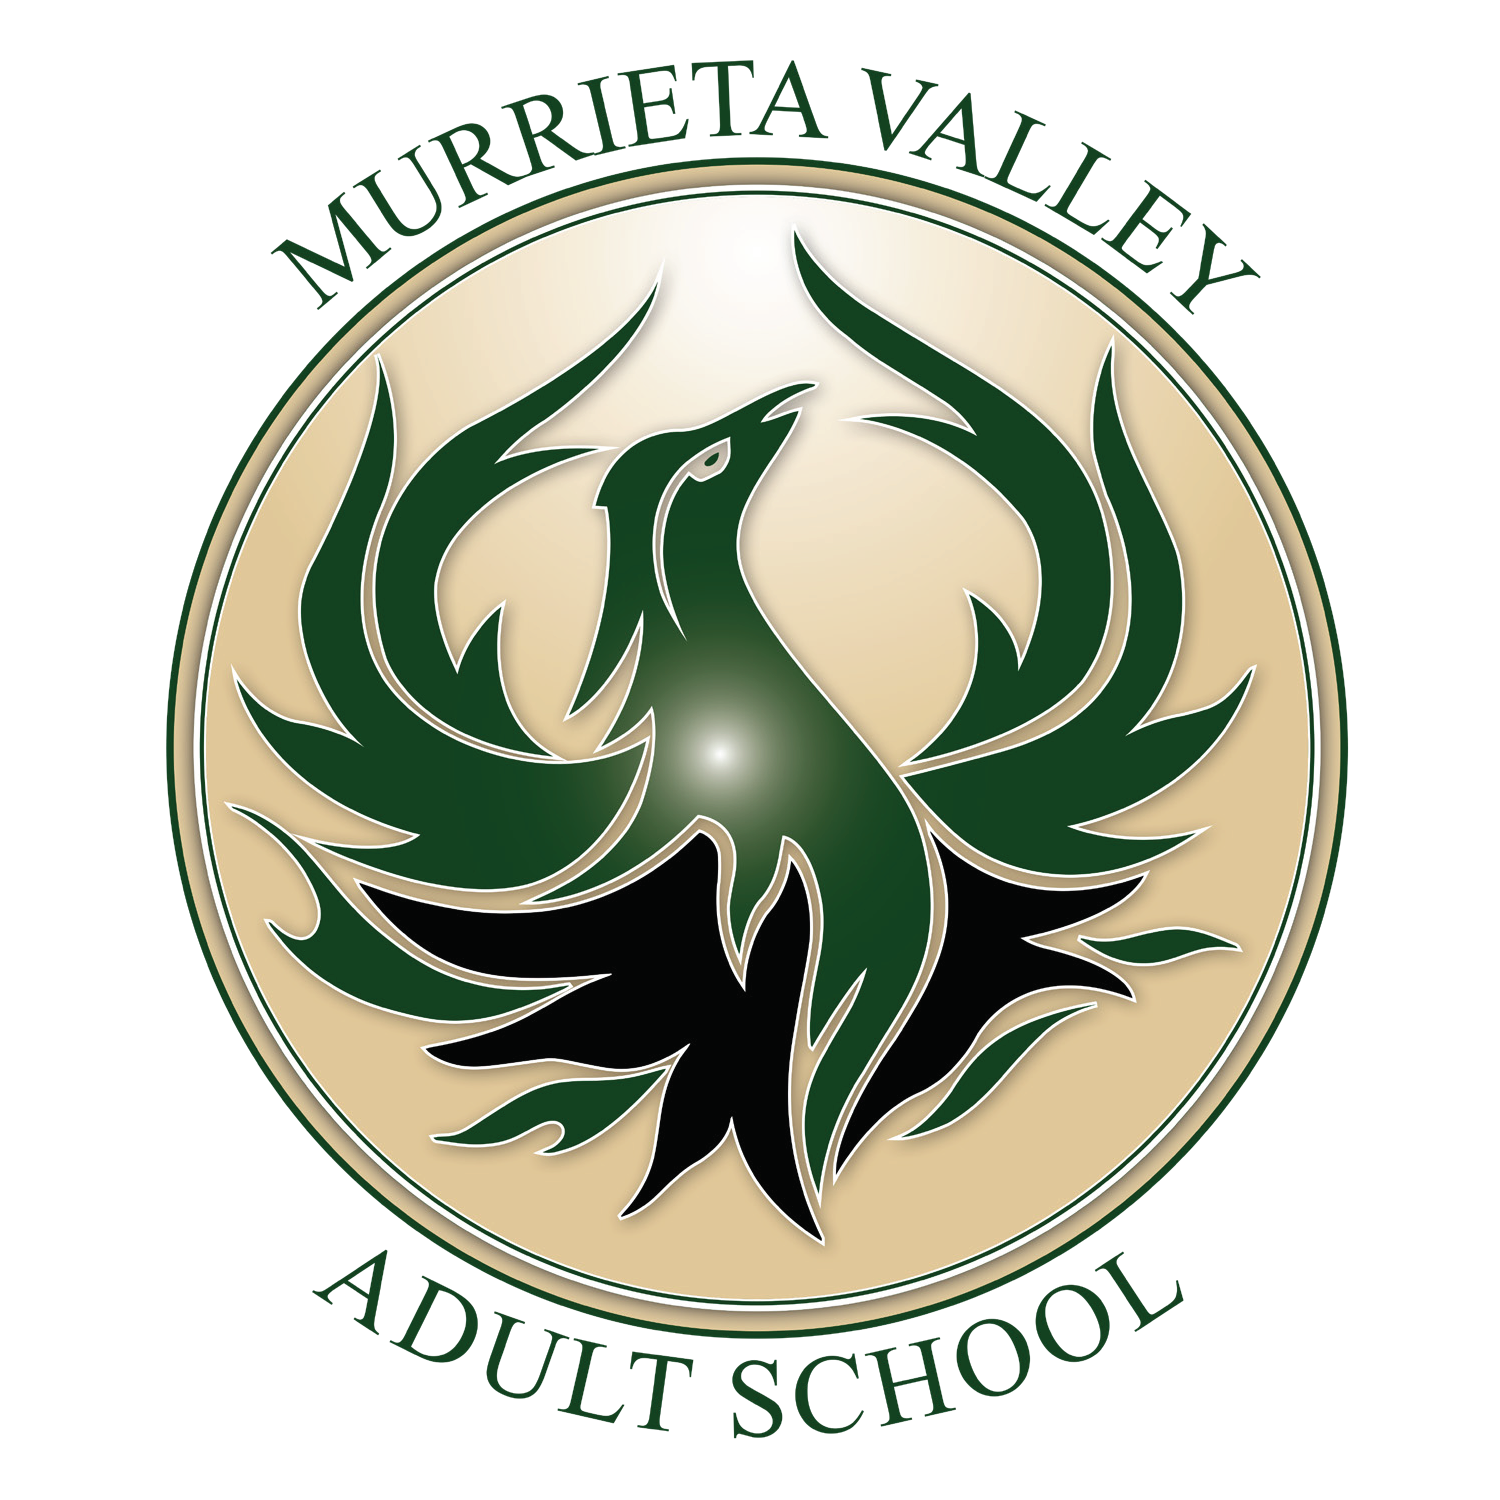 Murrieta Valley Adult School